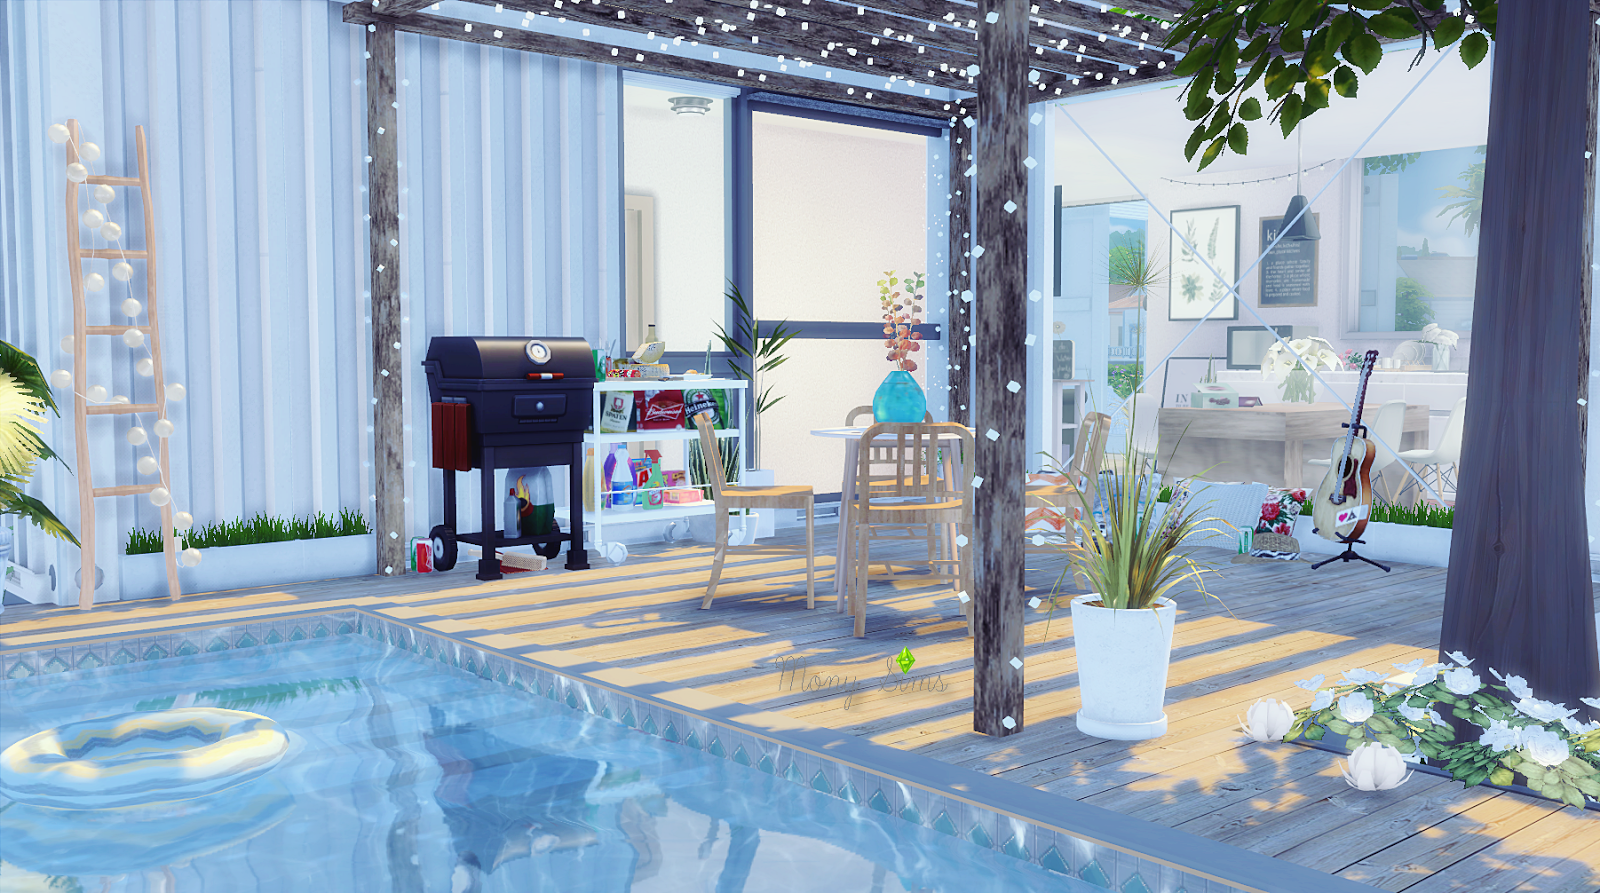 The Sims 4 House - Desain Rumah